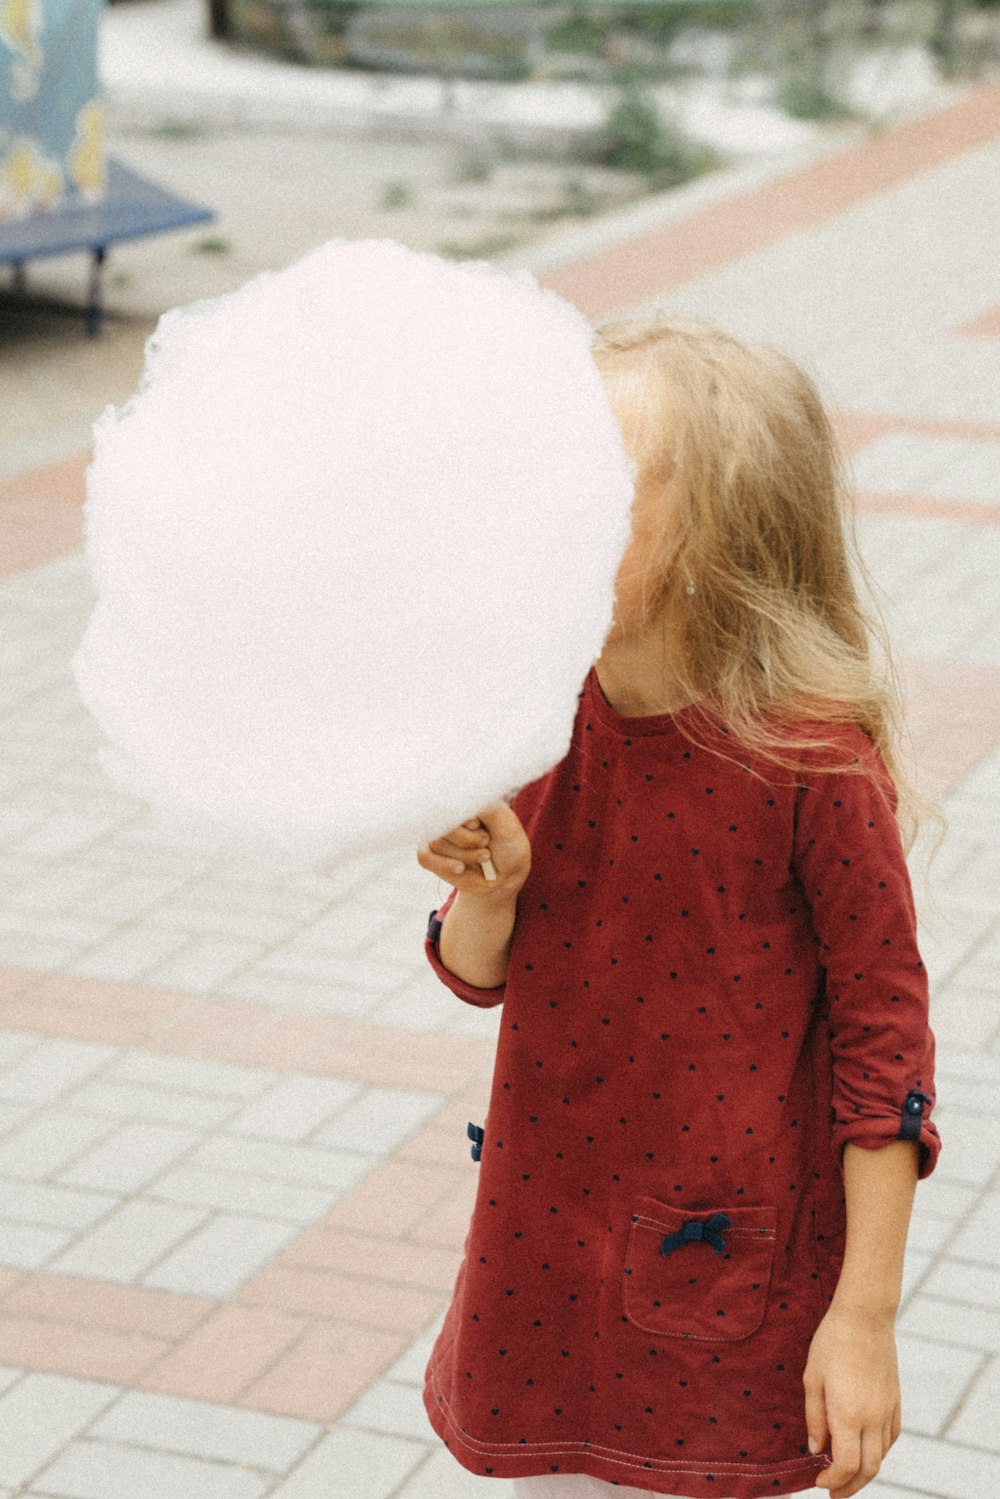 Una niña pequeña sosteniendo una gran bola de algodón blanco